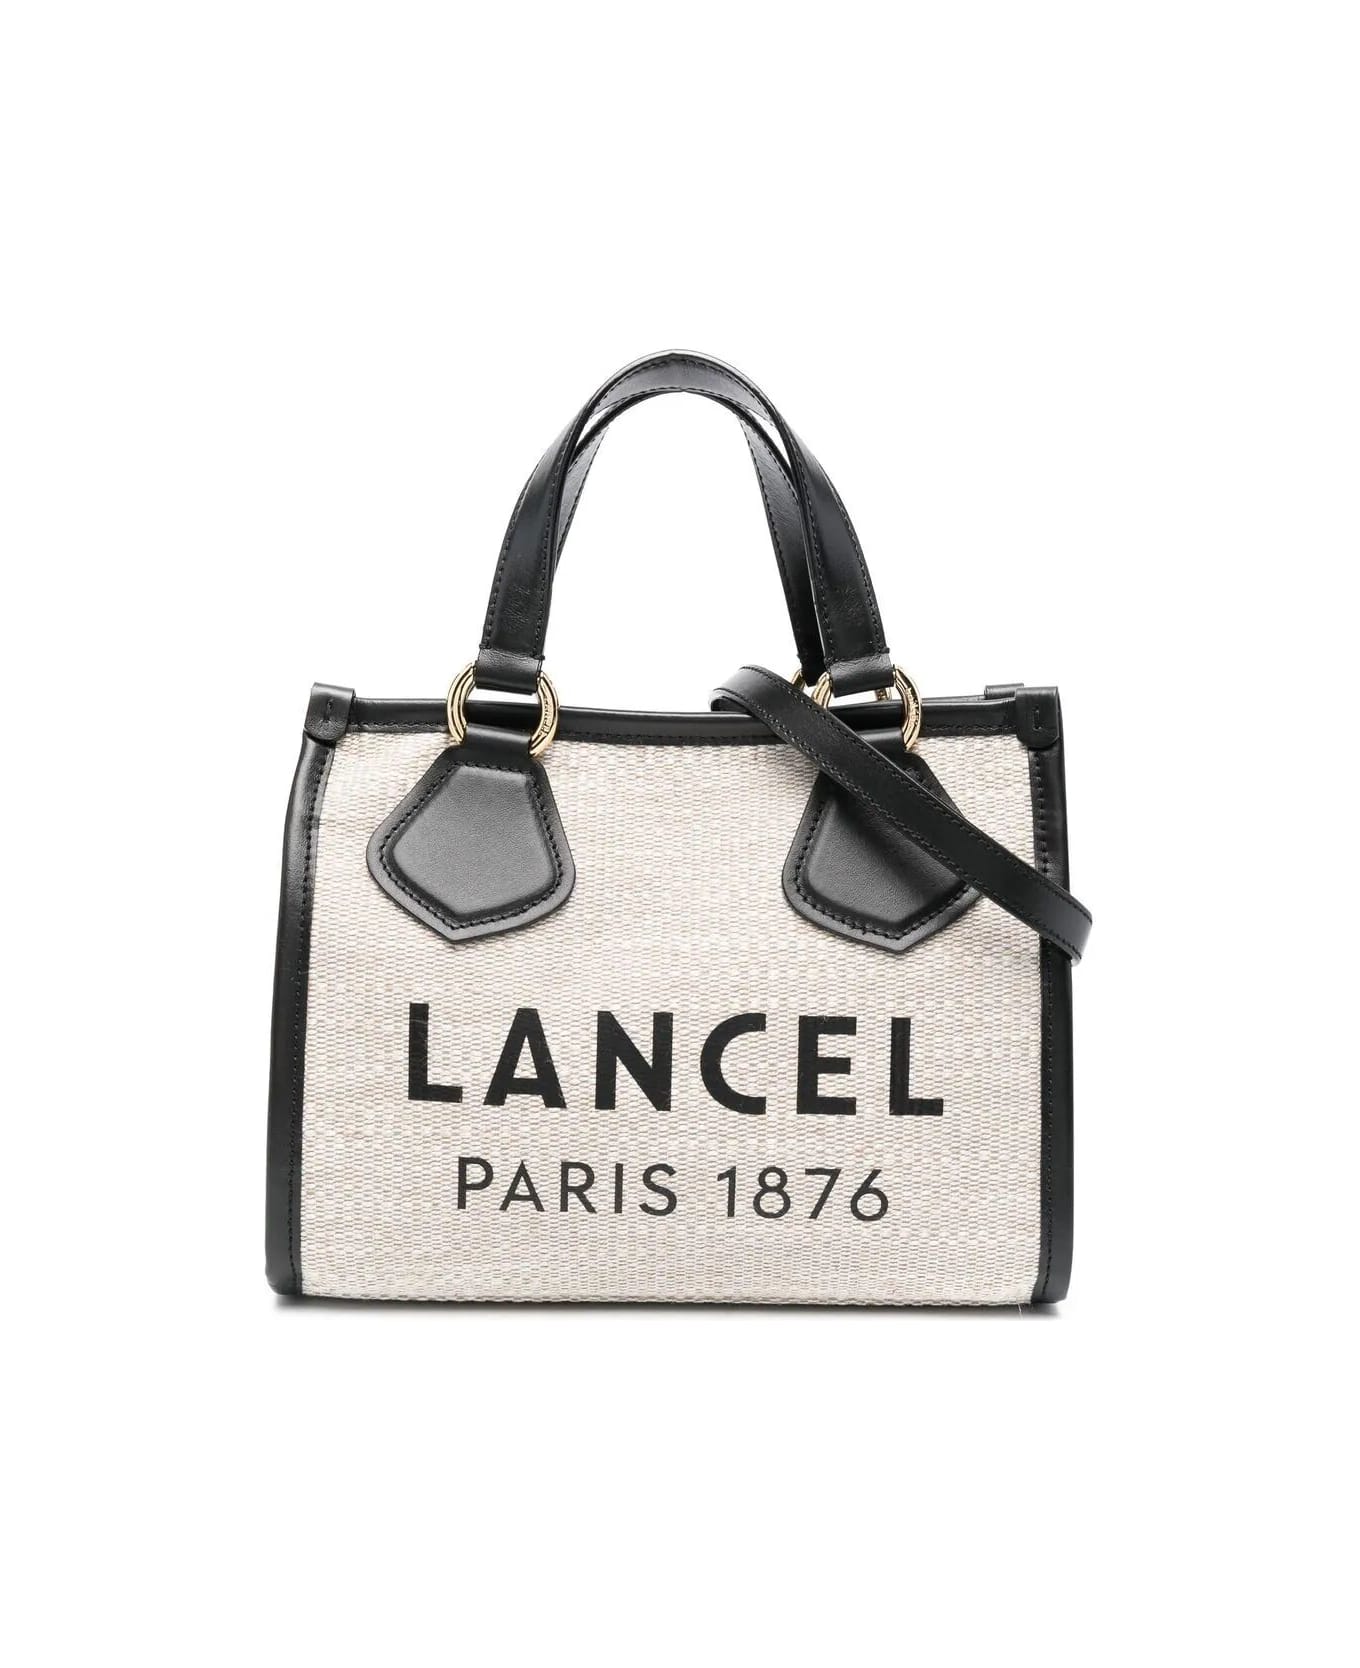 Lancel Summer Tote - L414301l Beach Bag - A Natural Blk